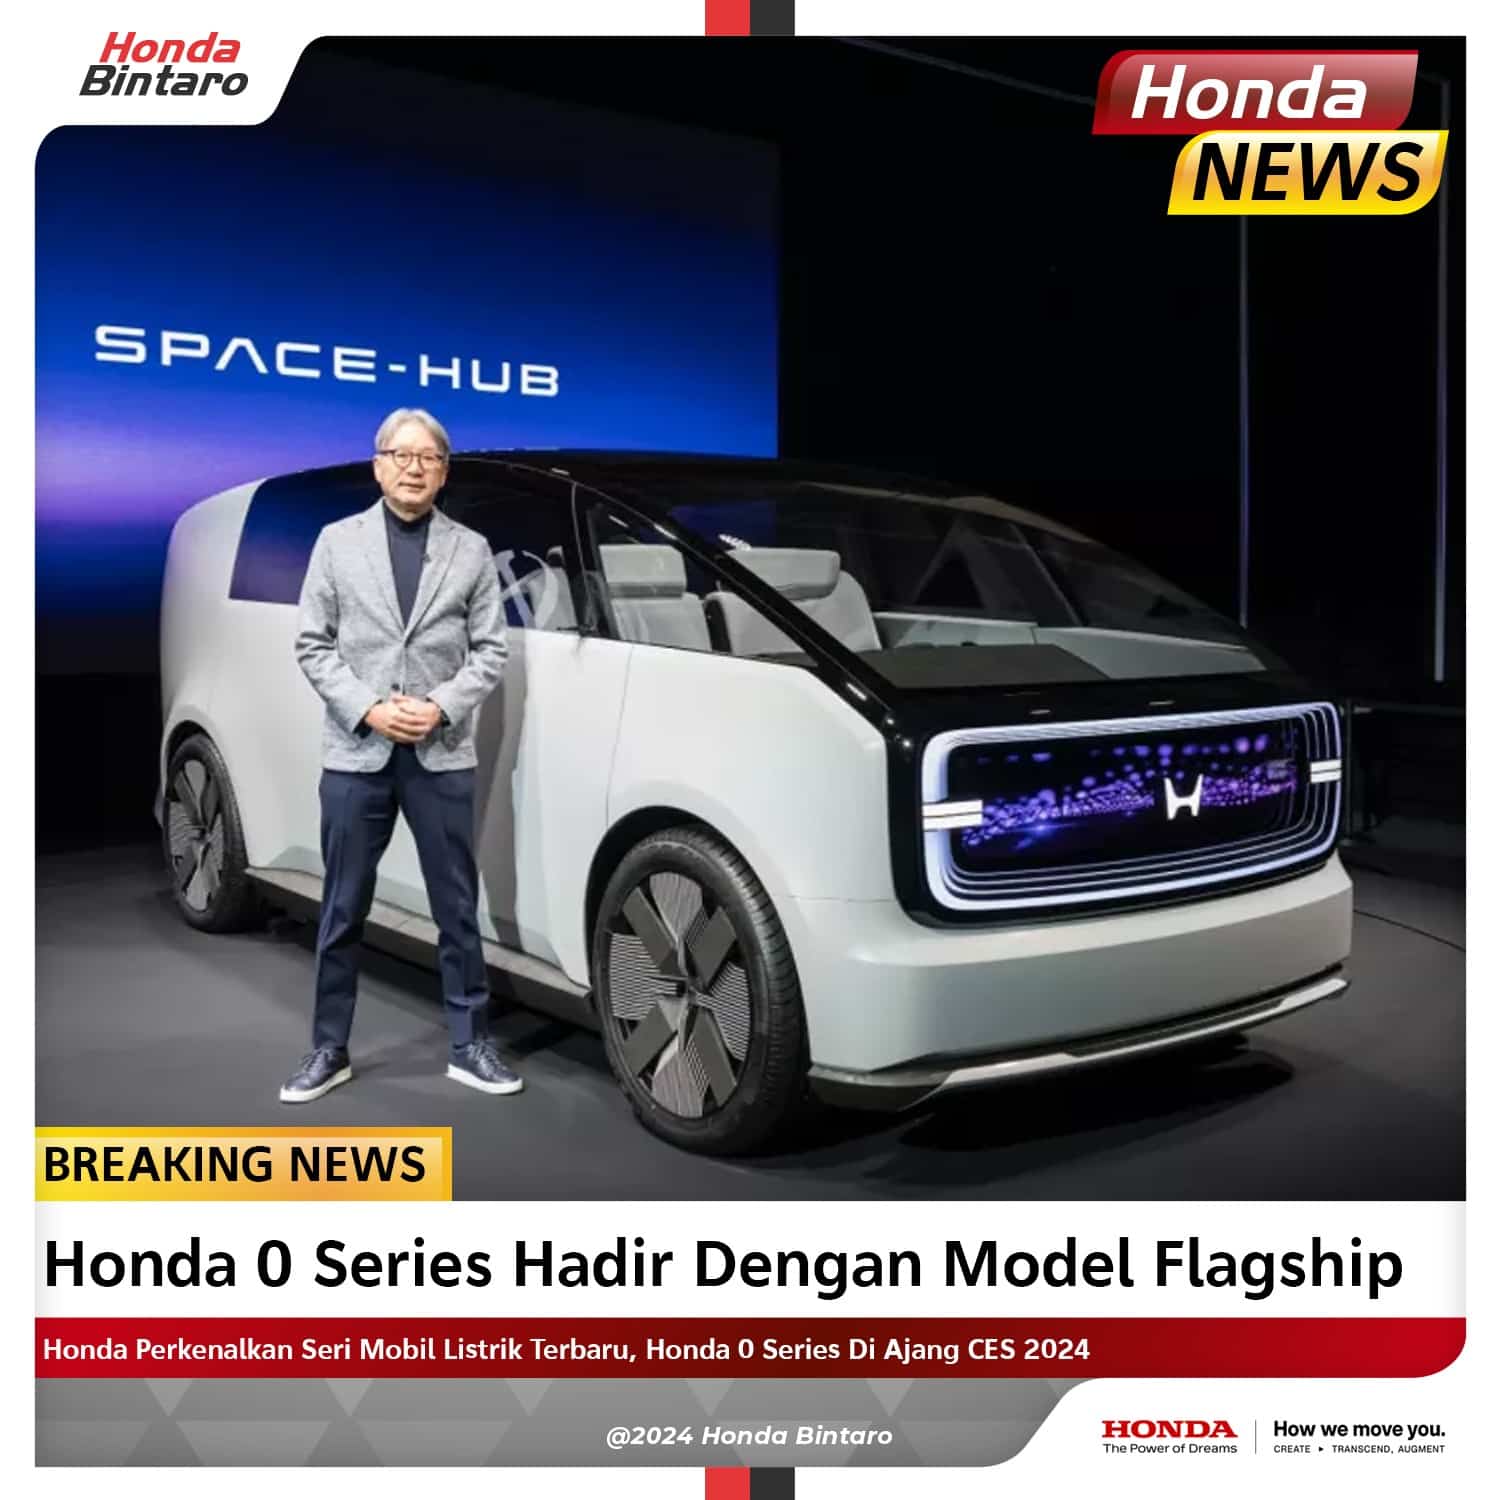 Honda 0 Series Hadir dengan Model Flagship